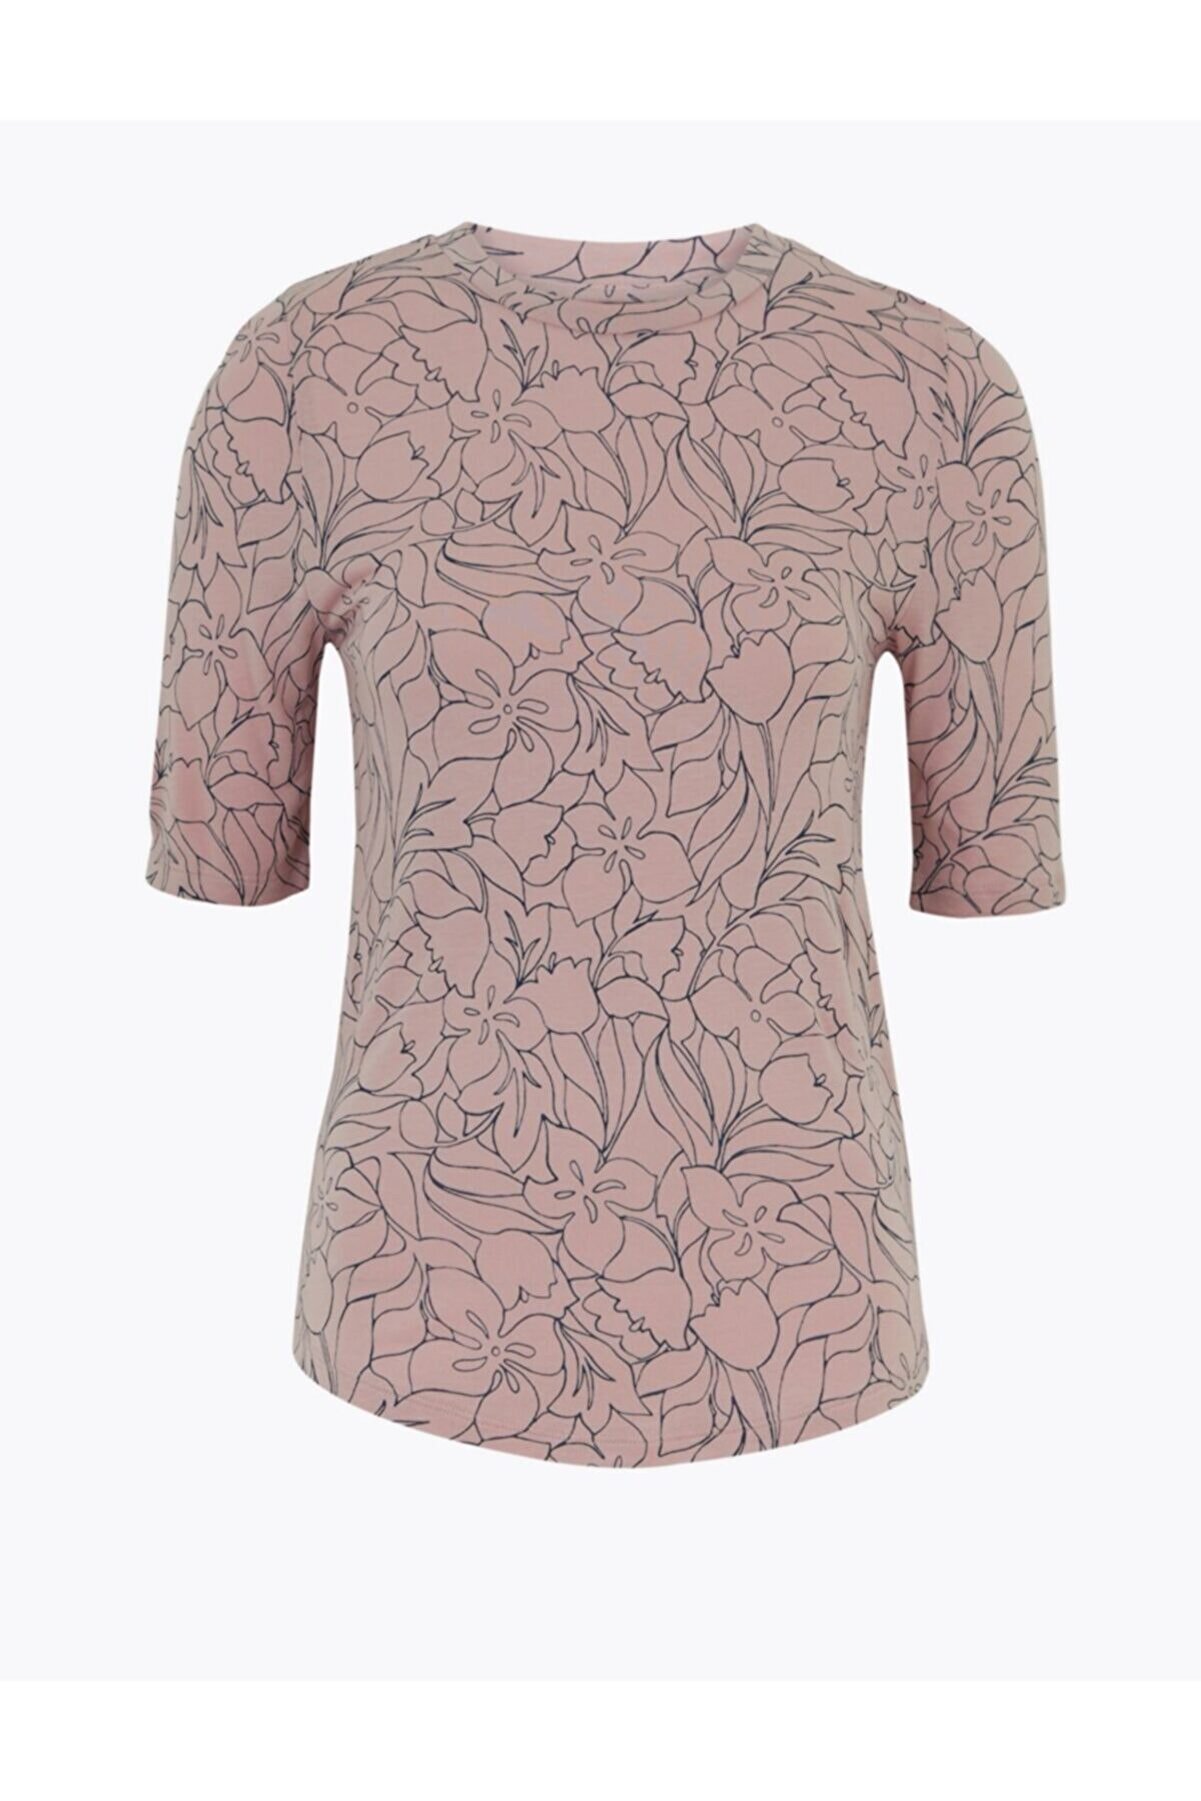 Marks & Spencer Çiçek Desenli Kısa Kollu T-shirt